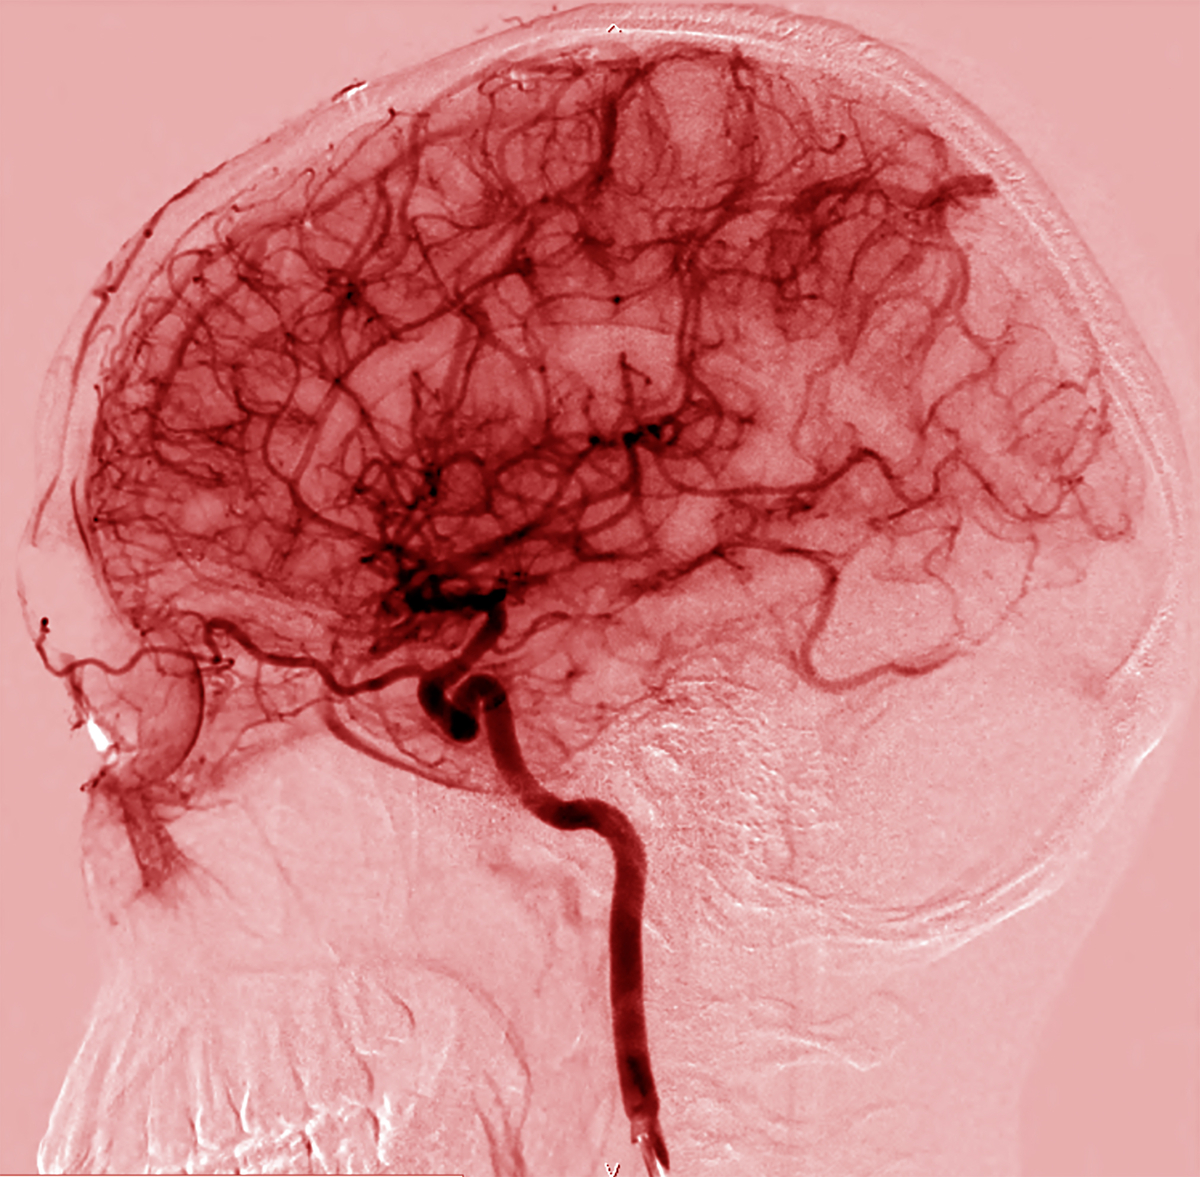 Dies ist ein Bild der vielen Blutgefäße des Gehirns. Die Zellen, die diese Gefäße auskleiden, bilden die Blut-Hirn-Schranke.   